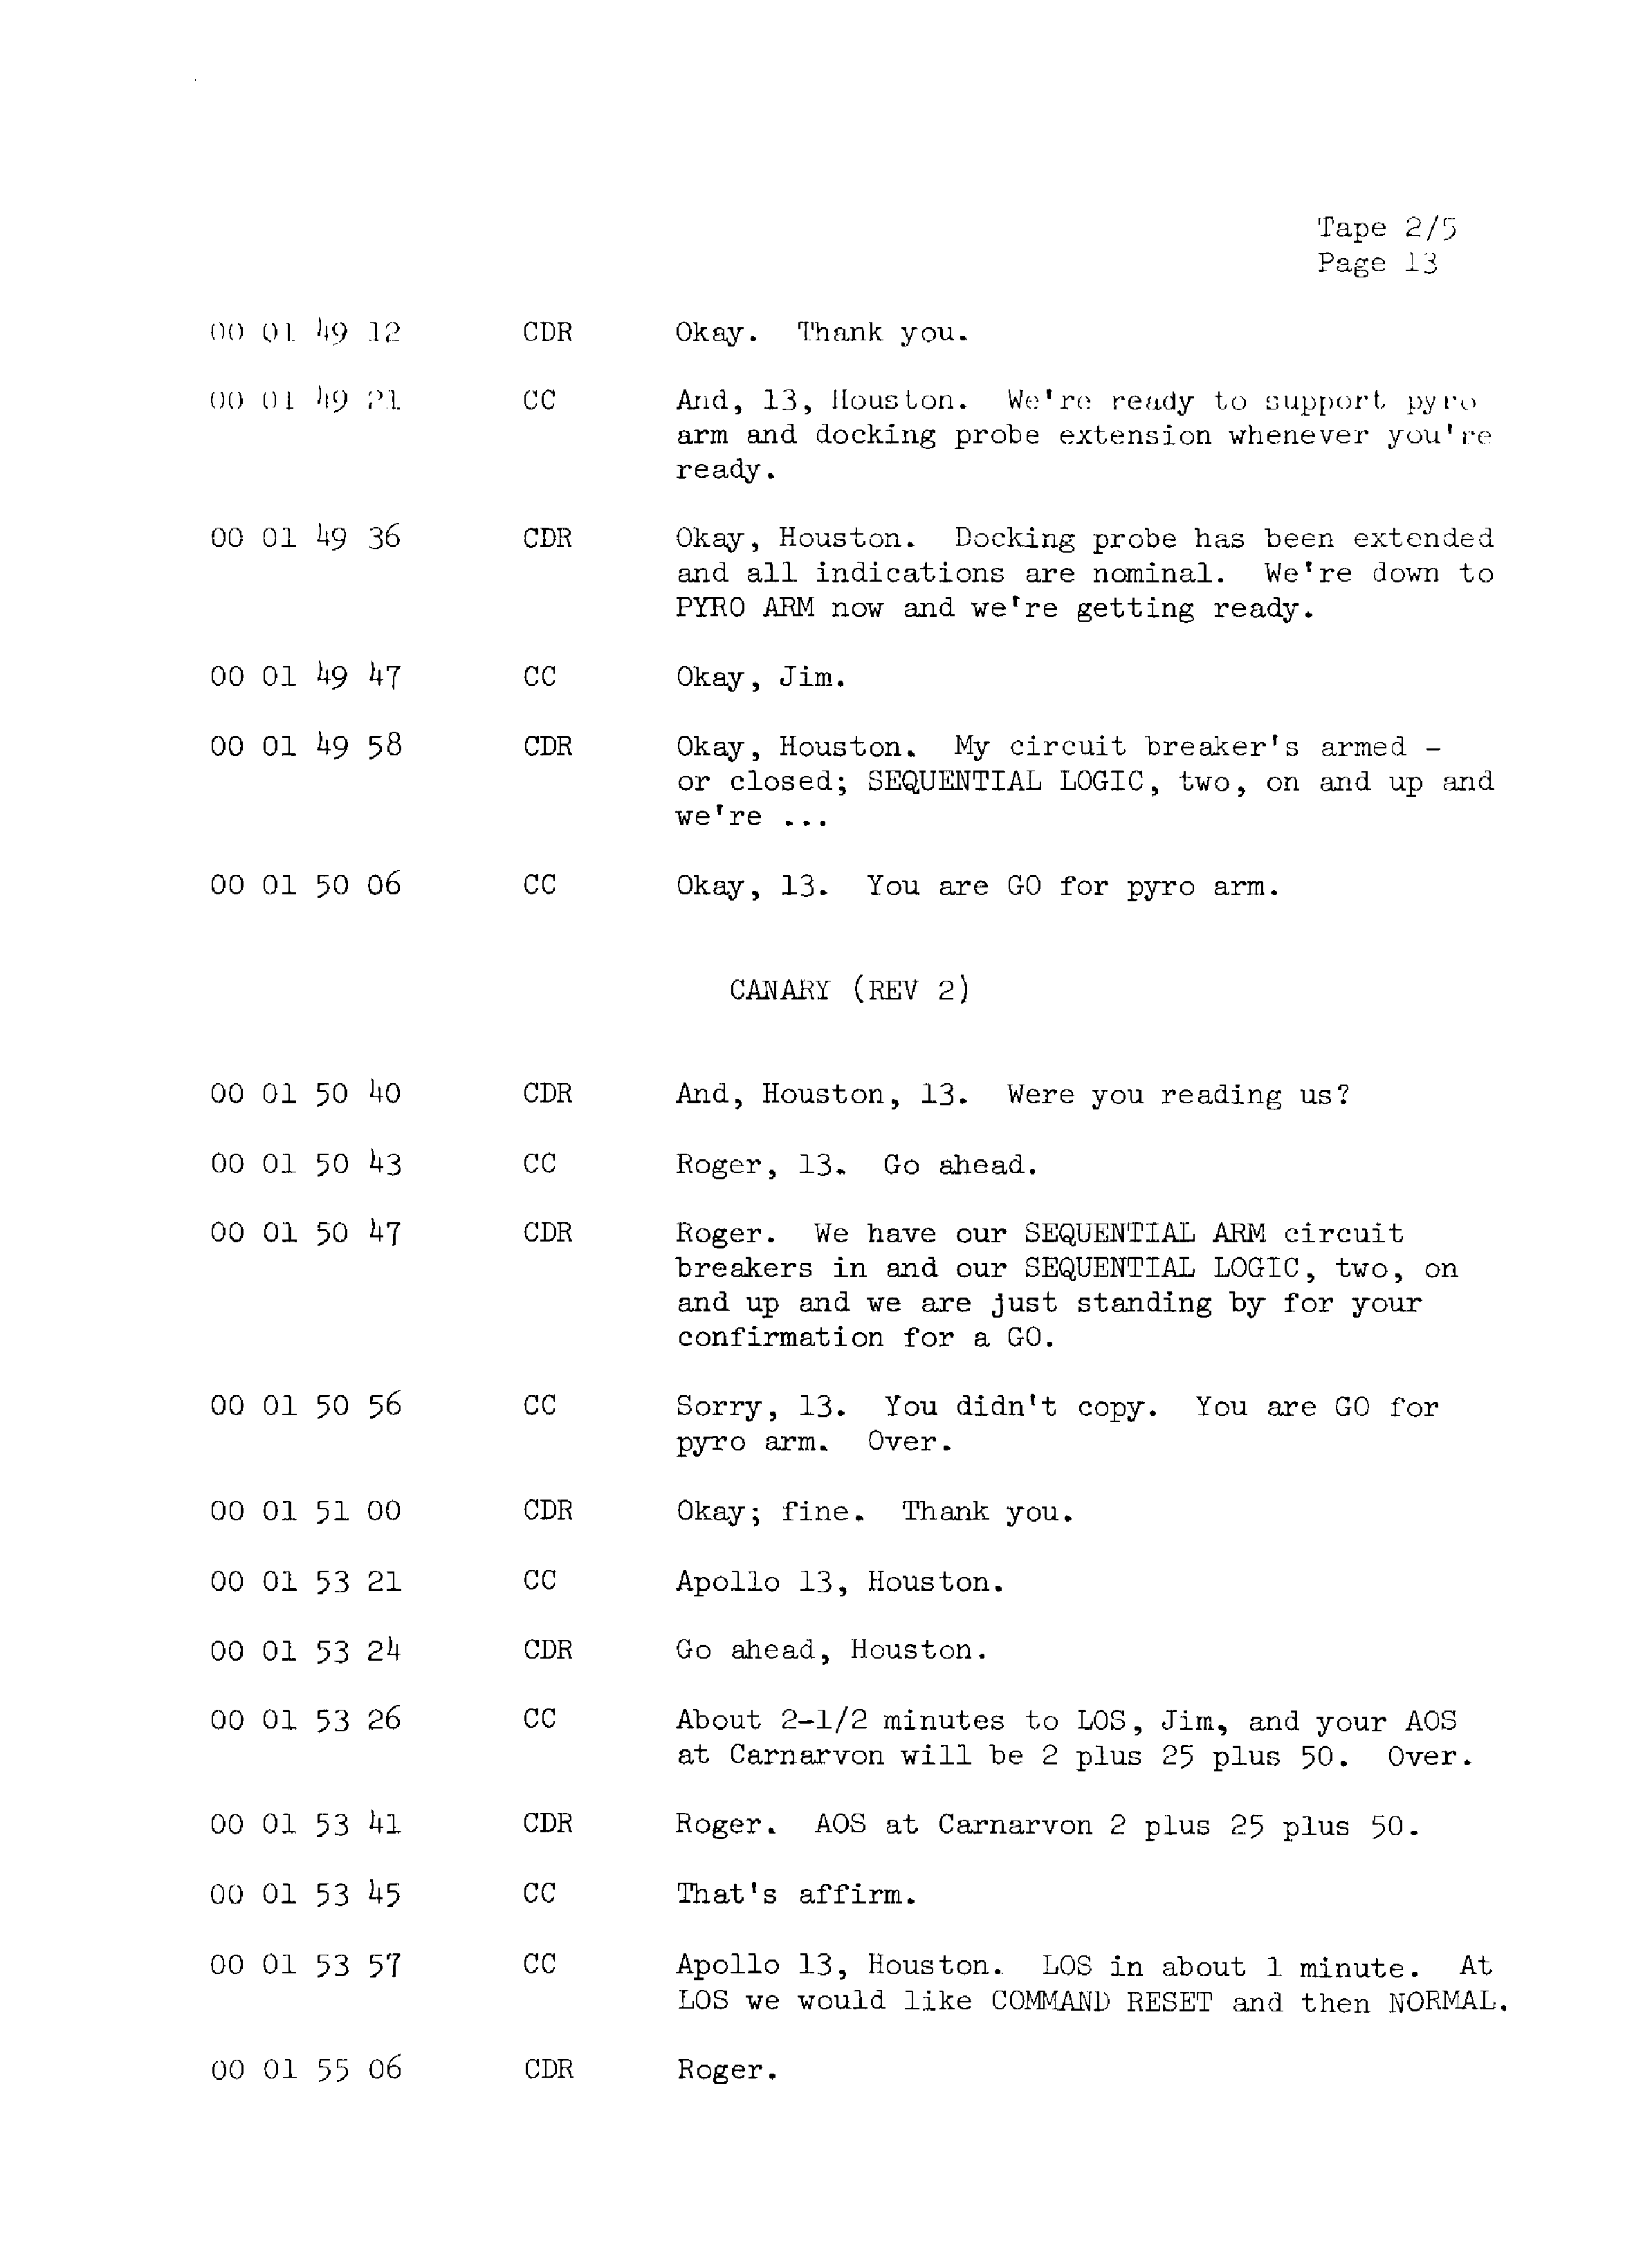 Page 20 of Apollo 13’s original transcript